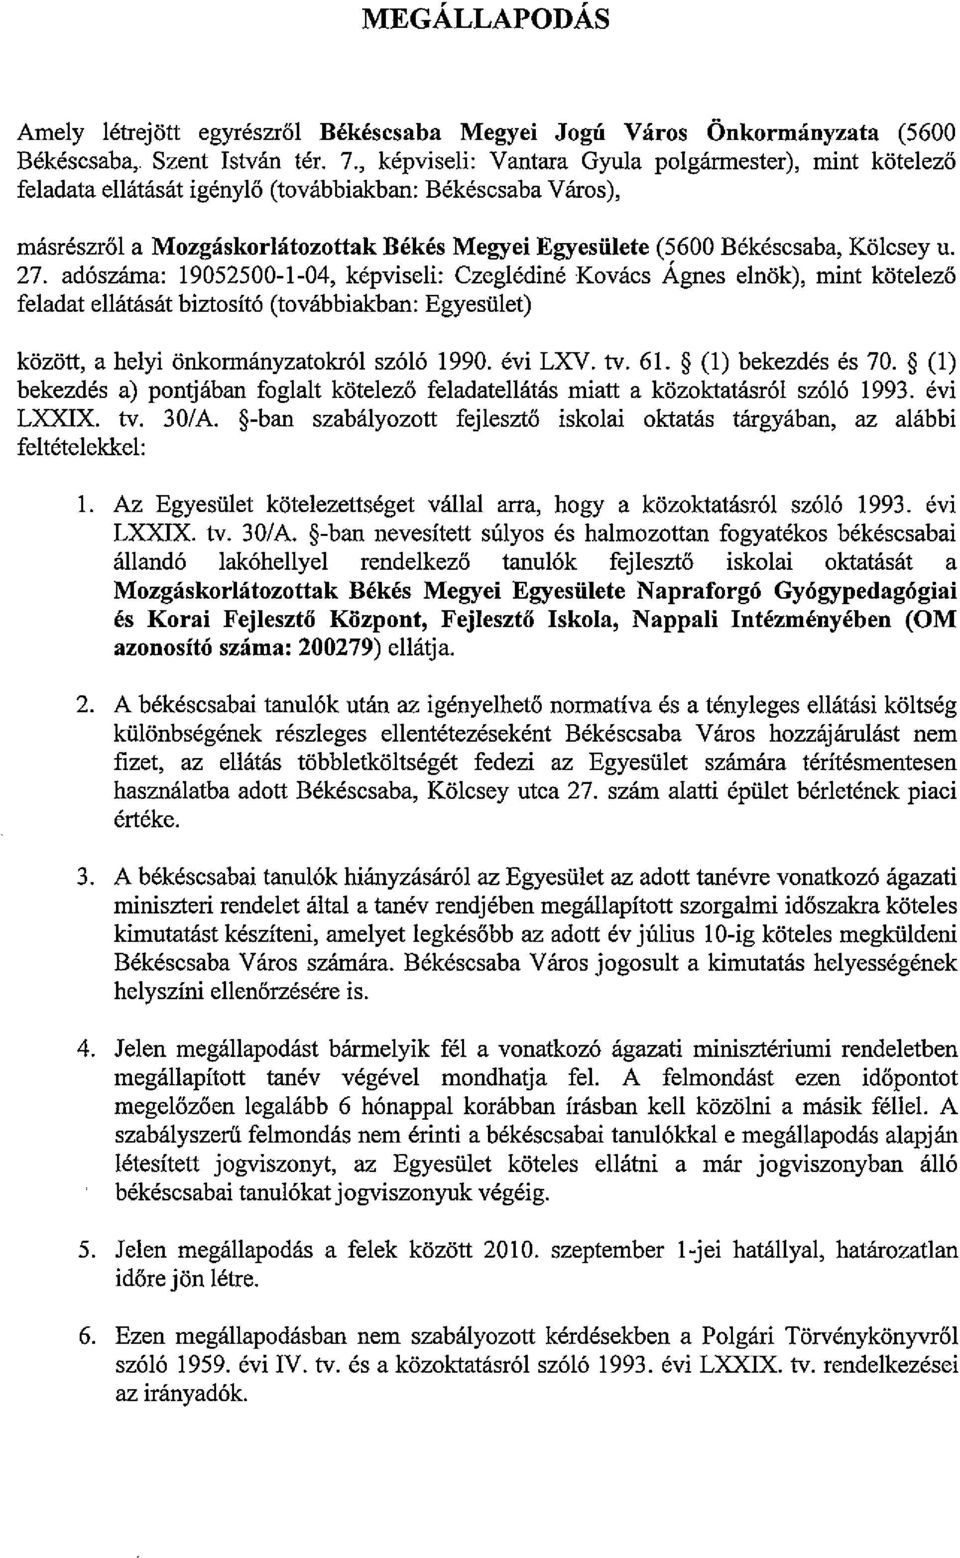 csey u. 27. ad6szama: 19052500-1-04, kepviseli: Czegledine Kovacs Agnes elnok), mint kotelezo feladat ellatasm biztosit6 (tovabbiakban: Egyesiilet) kozott, a helyi onkormanyzatokr61 sz616 1990.